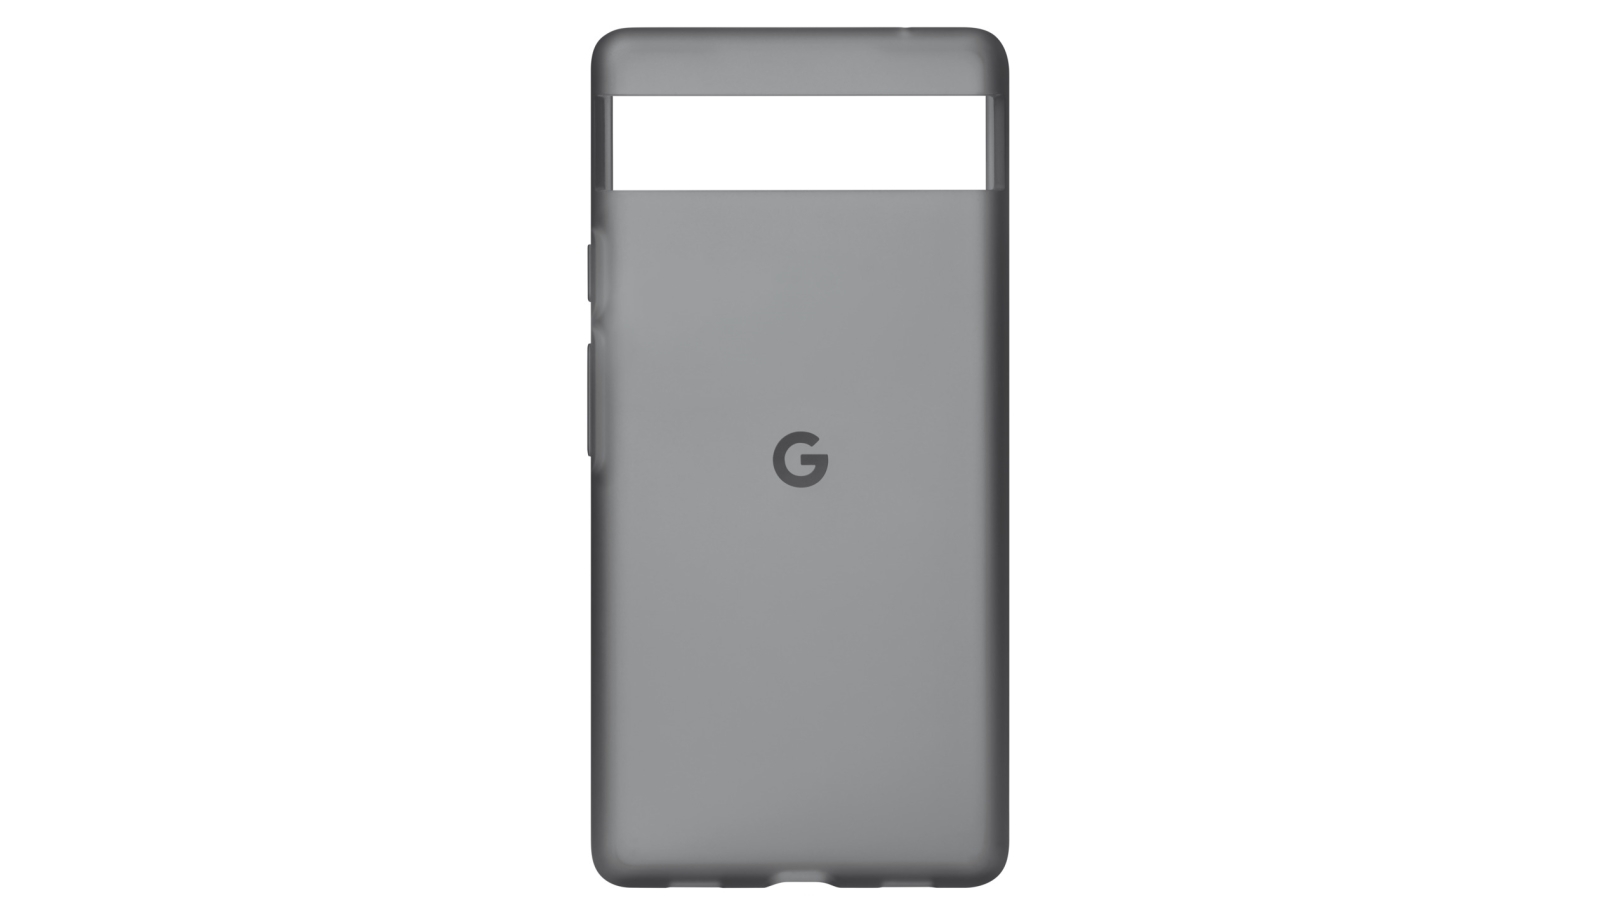 スマートフォン/携帯電話 スマートフォン本体 Buy Google Pixel 6a 128GB - Sage | Harvey Norman AU